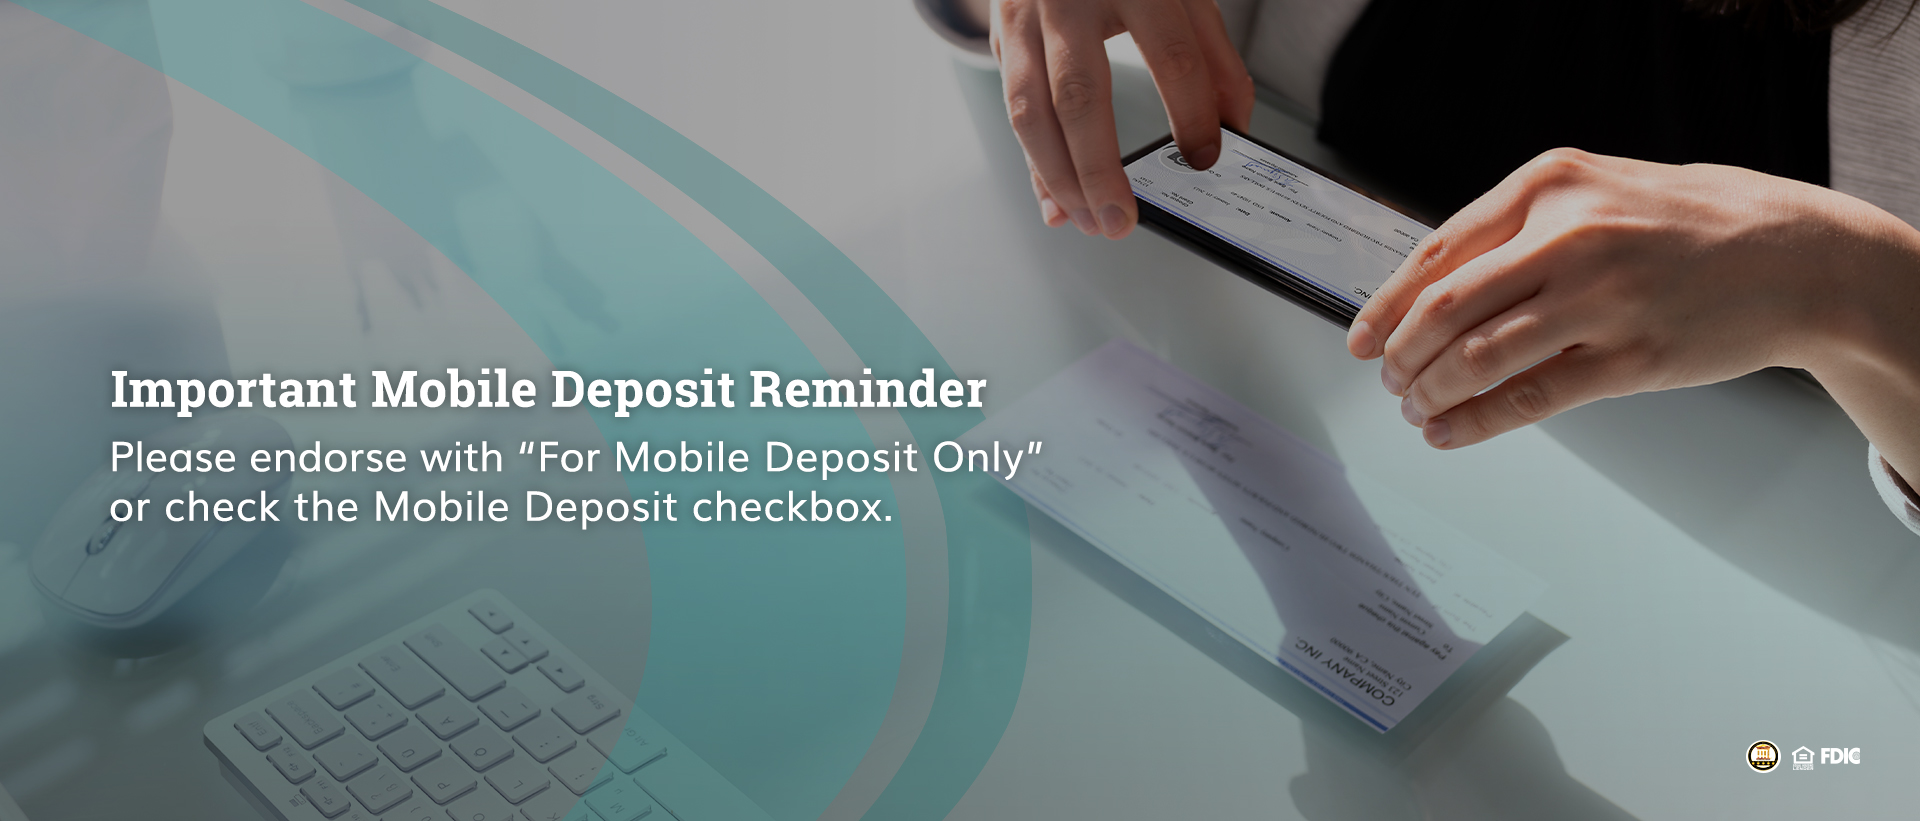 Mobile deposit reminder